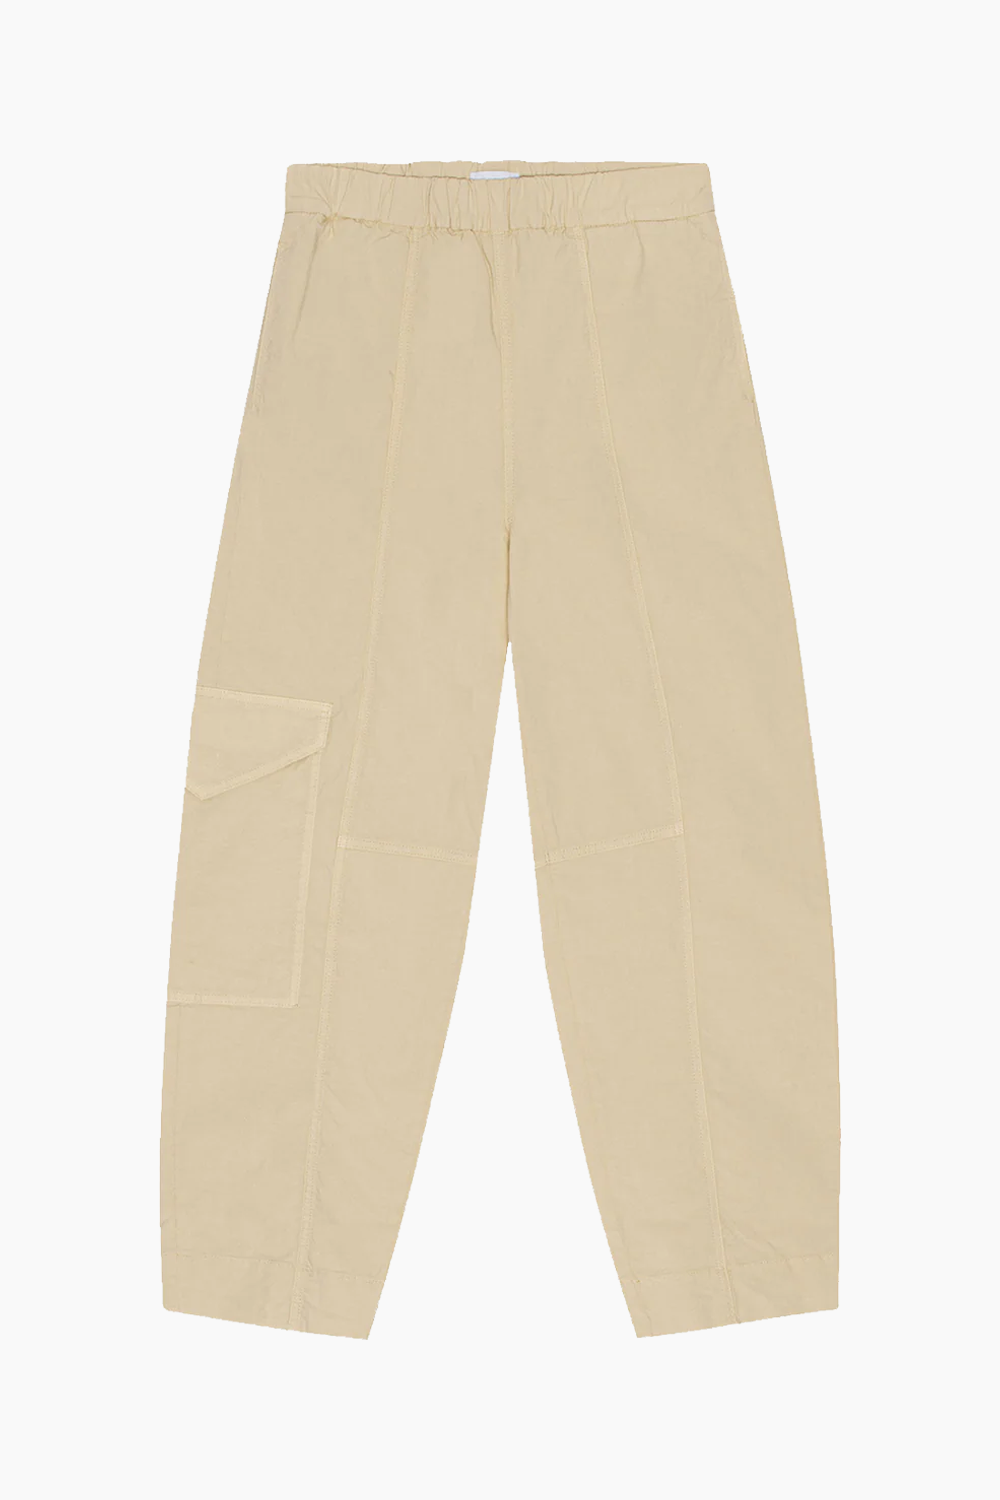 Billede af Washed Cotton Canvas Elasticated Curve Pants F8073 - Pale Khaki - GANNI - Beige M